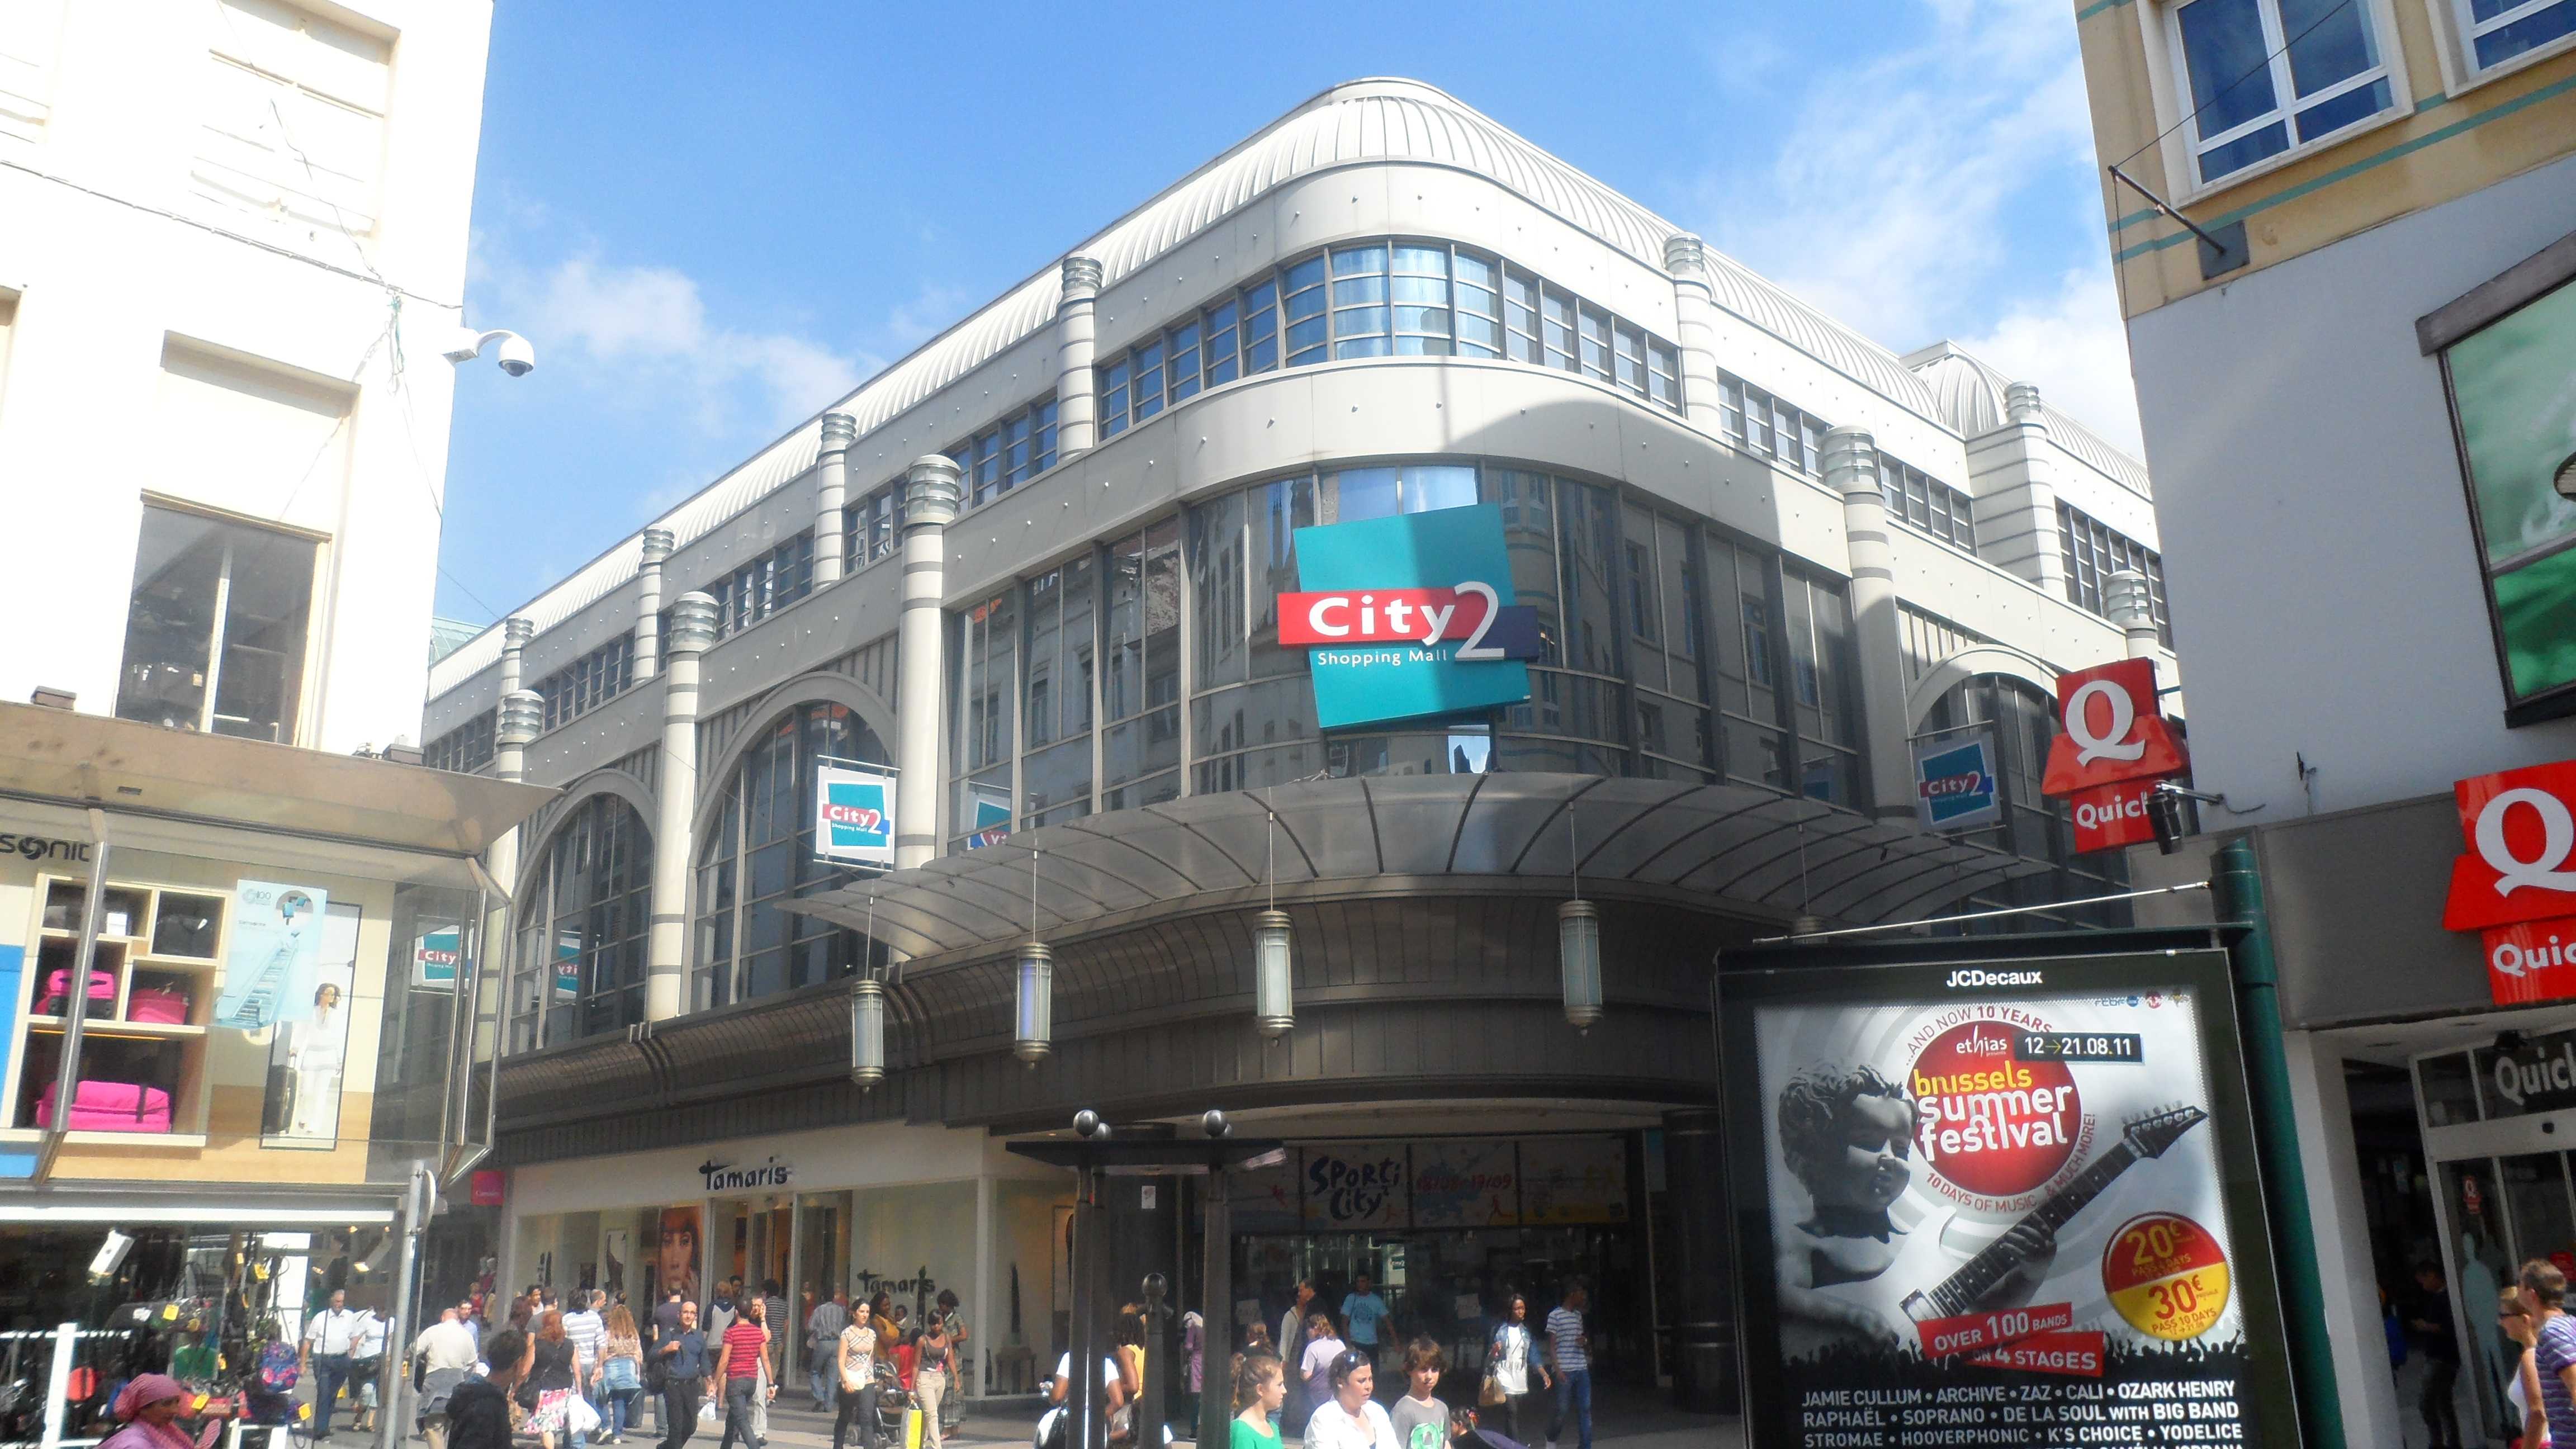 Bruxelles: allarme bomba in un centro commerciale in centro